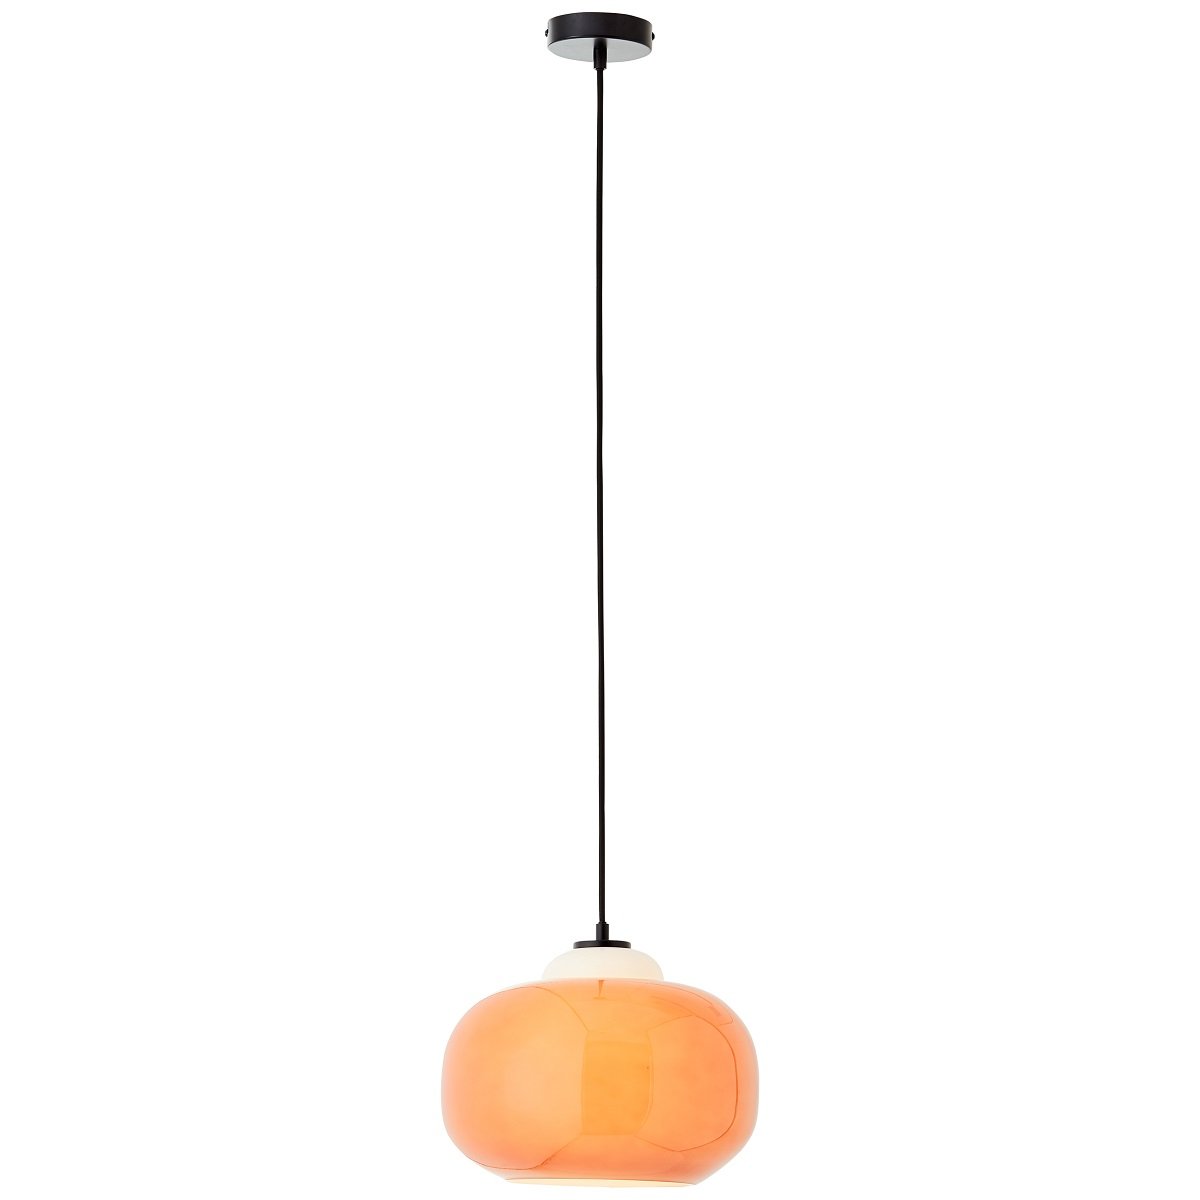 Brilliant AG Leuchten 99860-07 Blop Pendelleuchte 30cm Glas orange -->  Leuchten & Lampen online kaufen im Shop lightkont